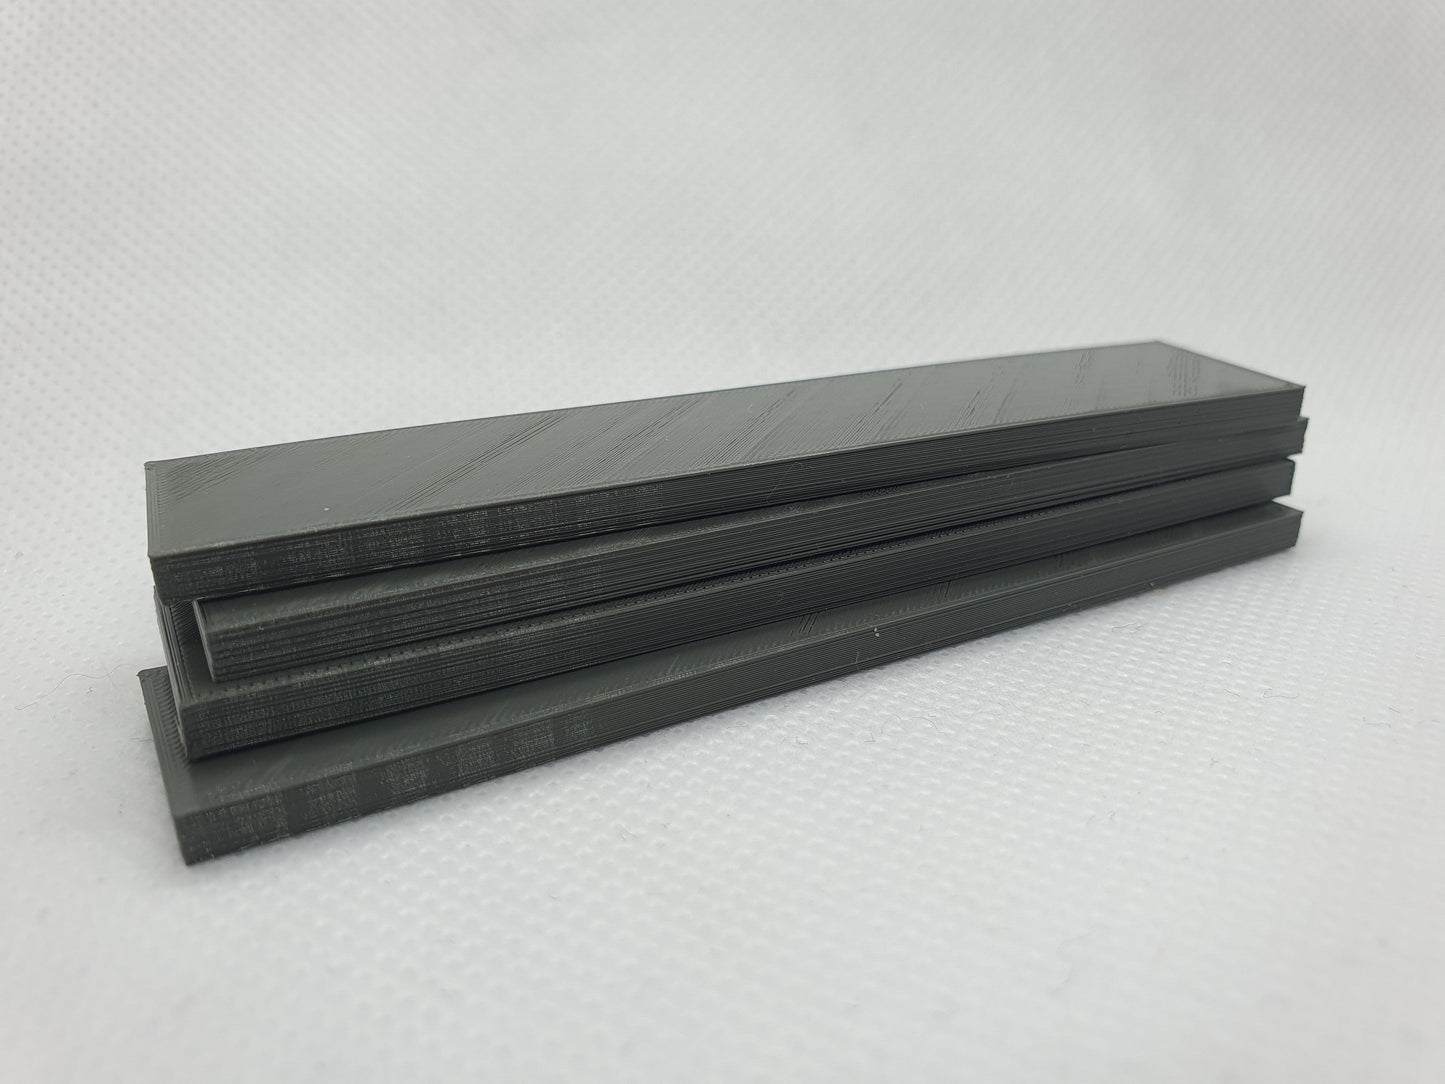 OO gauge unpainted scale models of four 7m steel slabs -Three Peaks Models